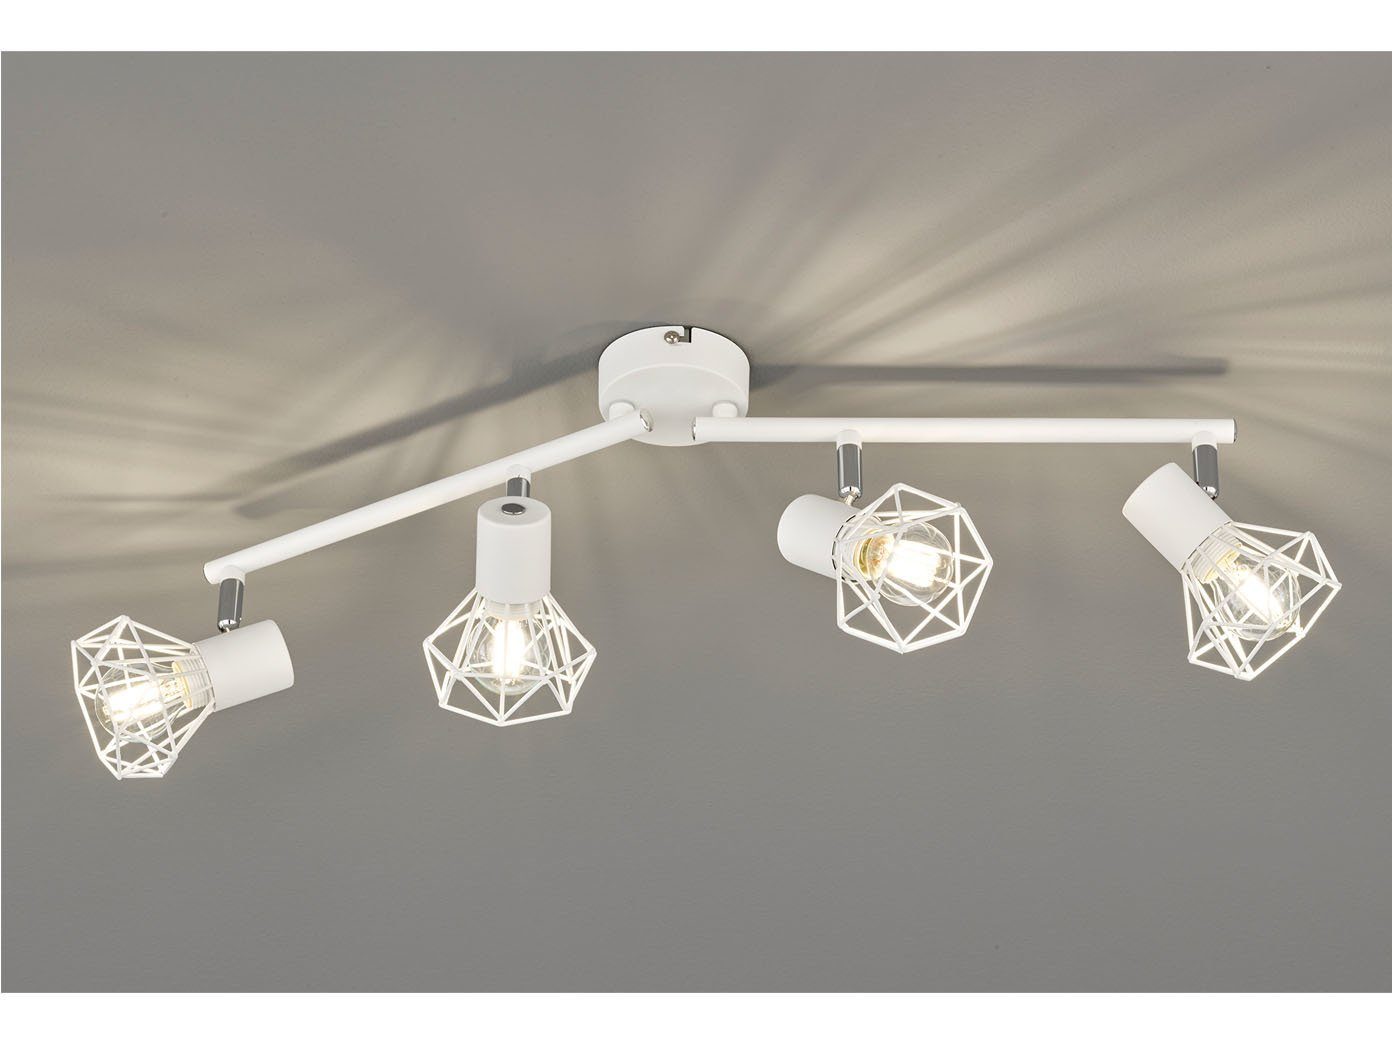 FISCHER & HONSEL LED Deckenspot, Gitter-Lampenschirm Decken-Leuchte  Strahler schwenkbar Deckenlampe im Retro Design für Deckenbeleuchtung  Wohnzimmer, Flur, Küche & Schlafzimmer online kaufen | OTTO